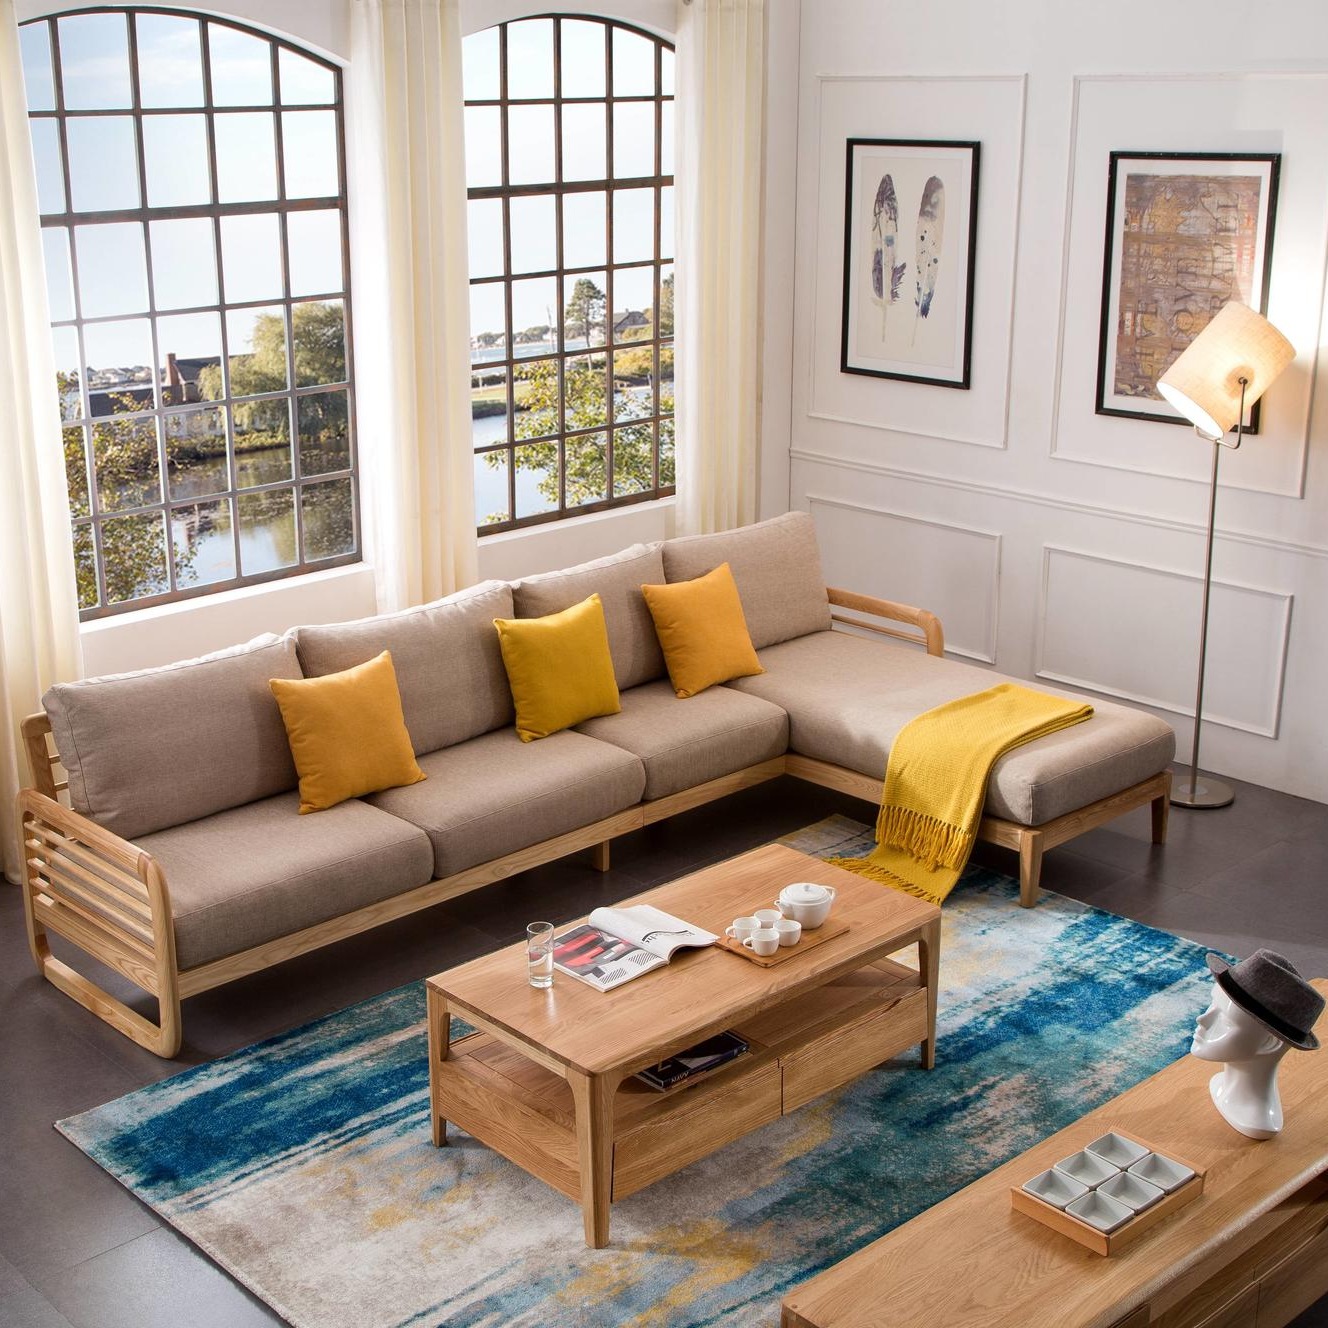 东莞公寓专用沙发 客厅组合休闲沙发 家具定制厂家 北欧简约沙发 布艺休闲沙发可定制